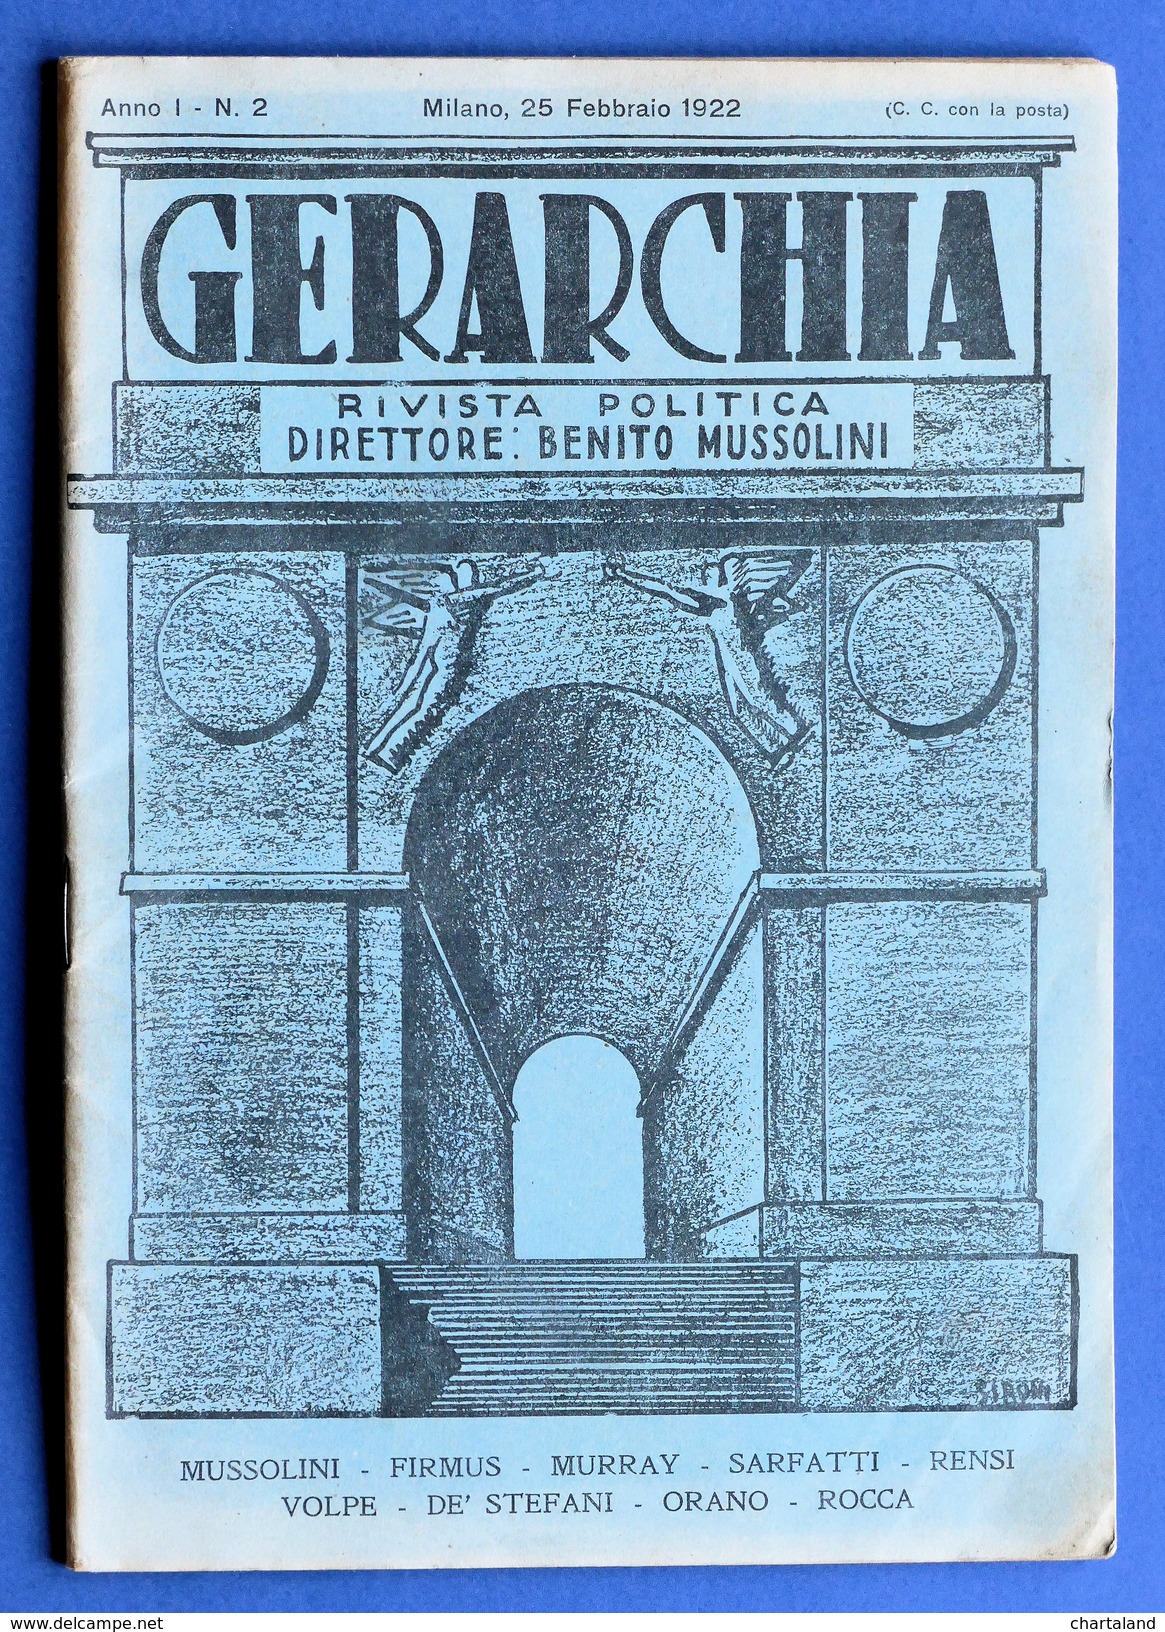 Fascismo - Gerarchia - Rivista Politica - B. Mussolini - Anno I - N° 2 - Febbraio 1922 - Histoire, Biographie, Philosophie